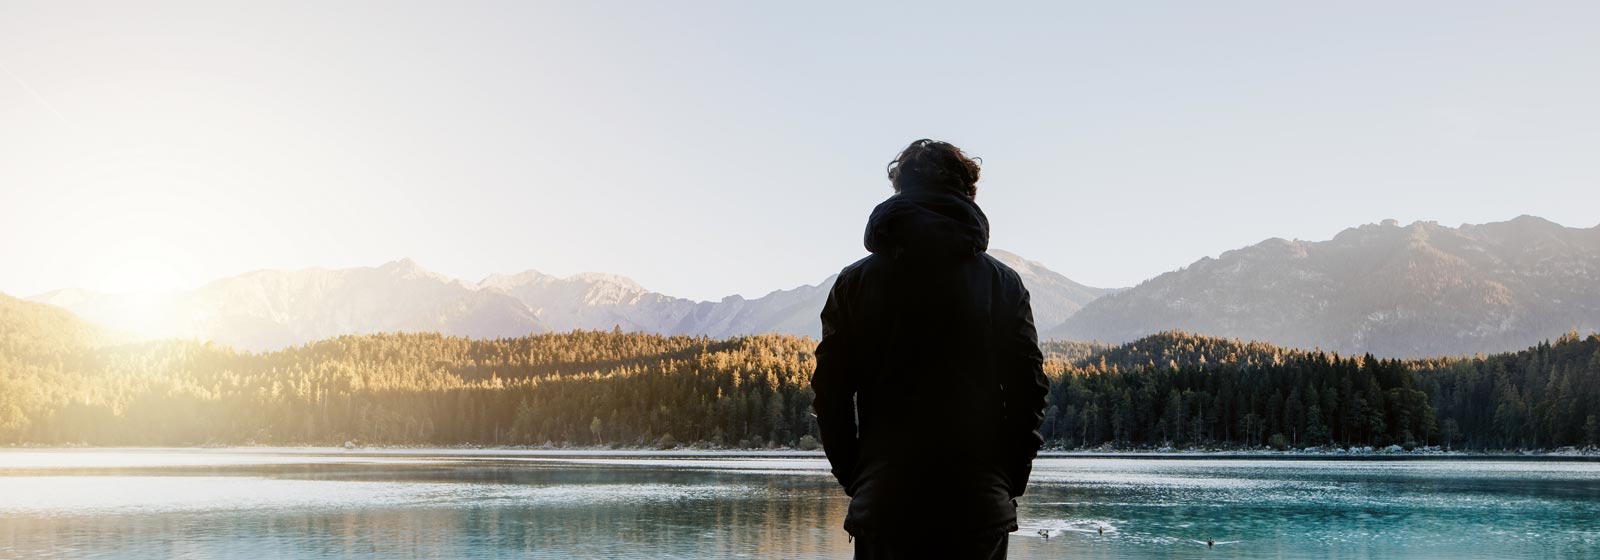 Ein Mann steht am Ufer des Sees und schaut nackdenklich in die Ferne.